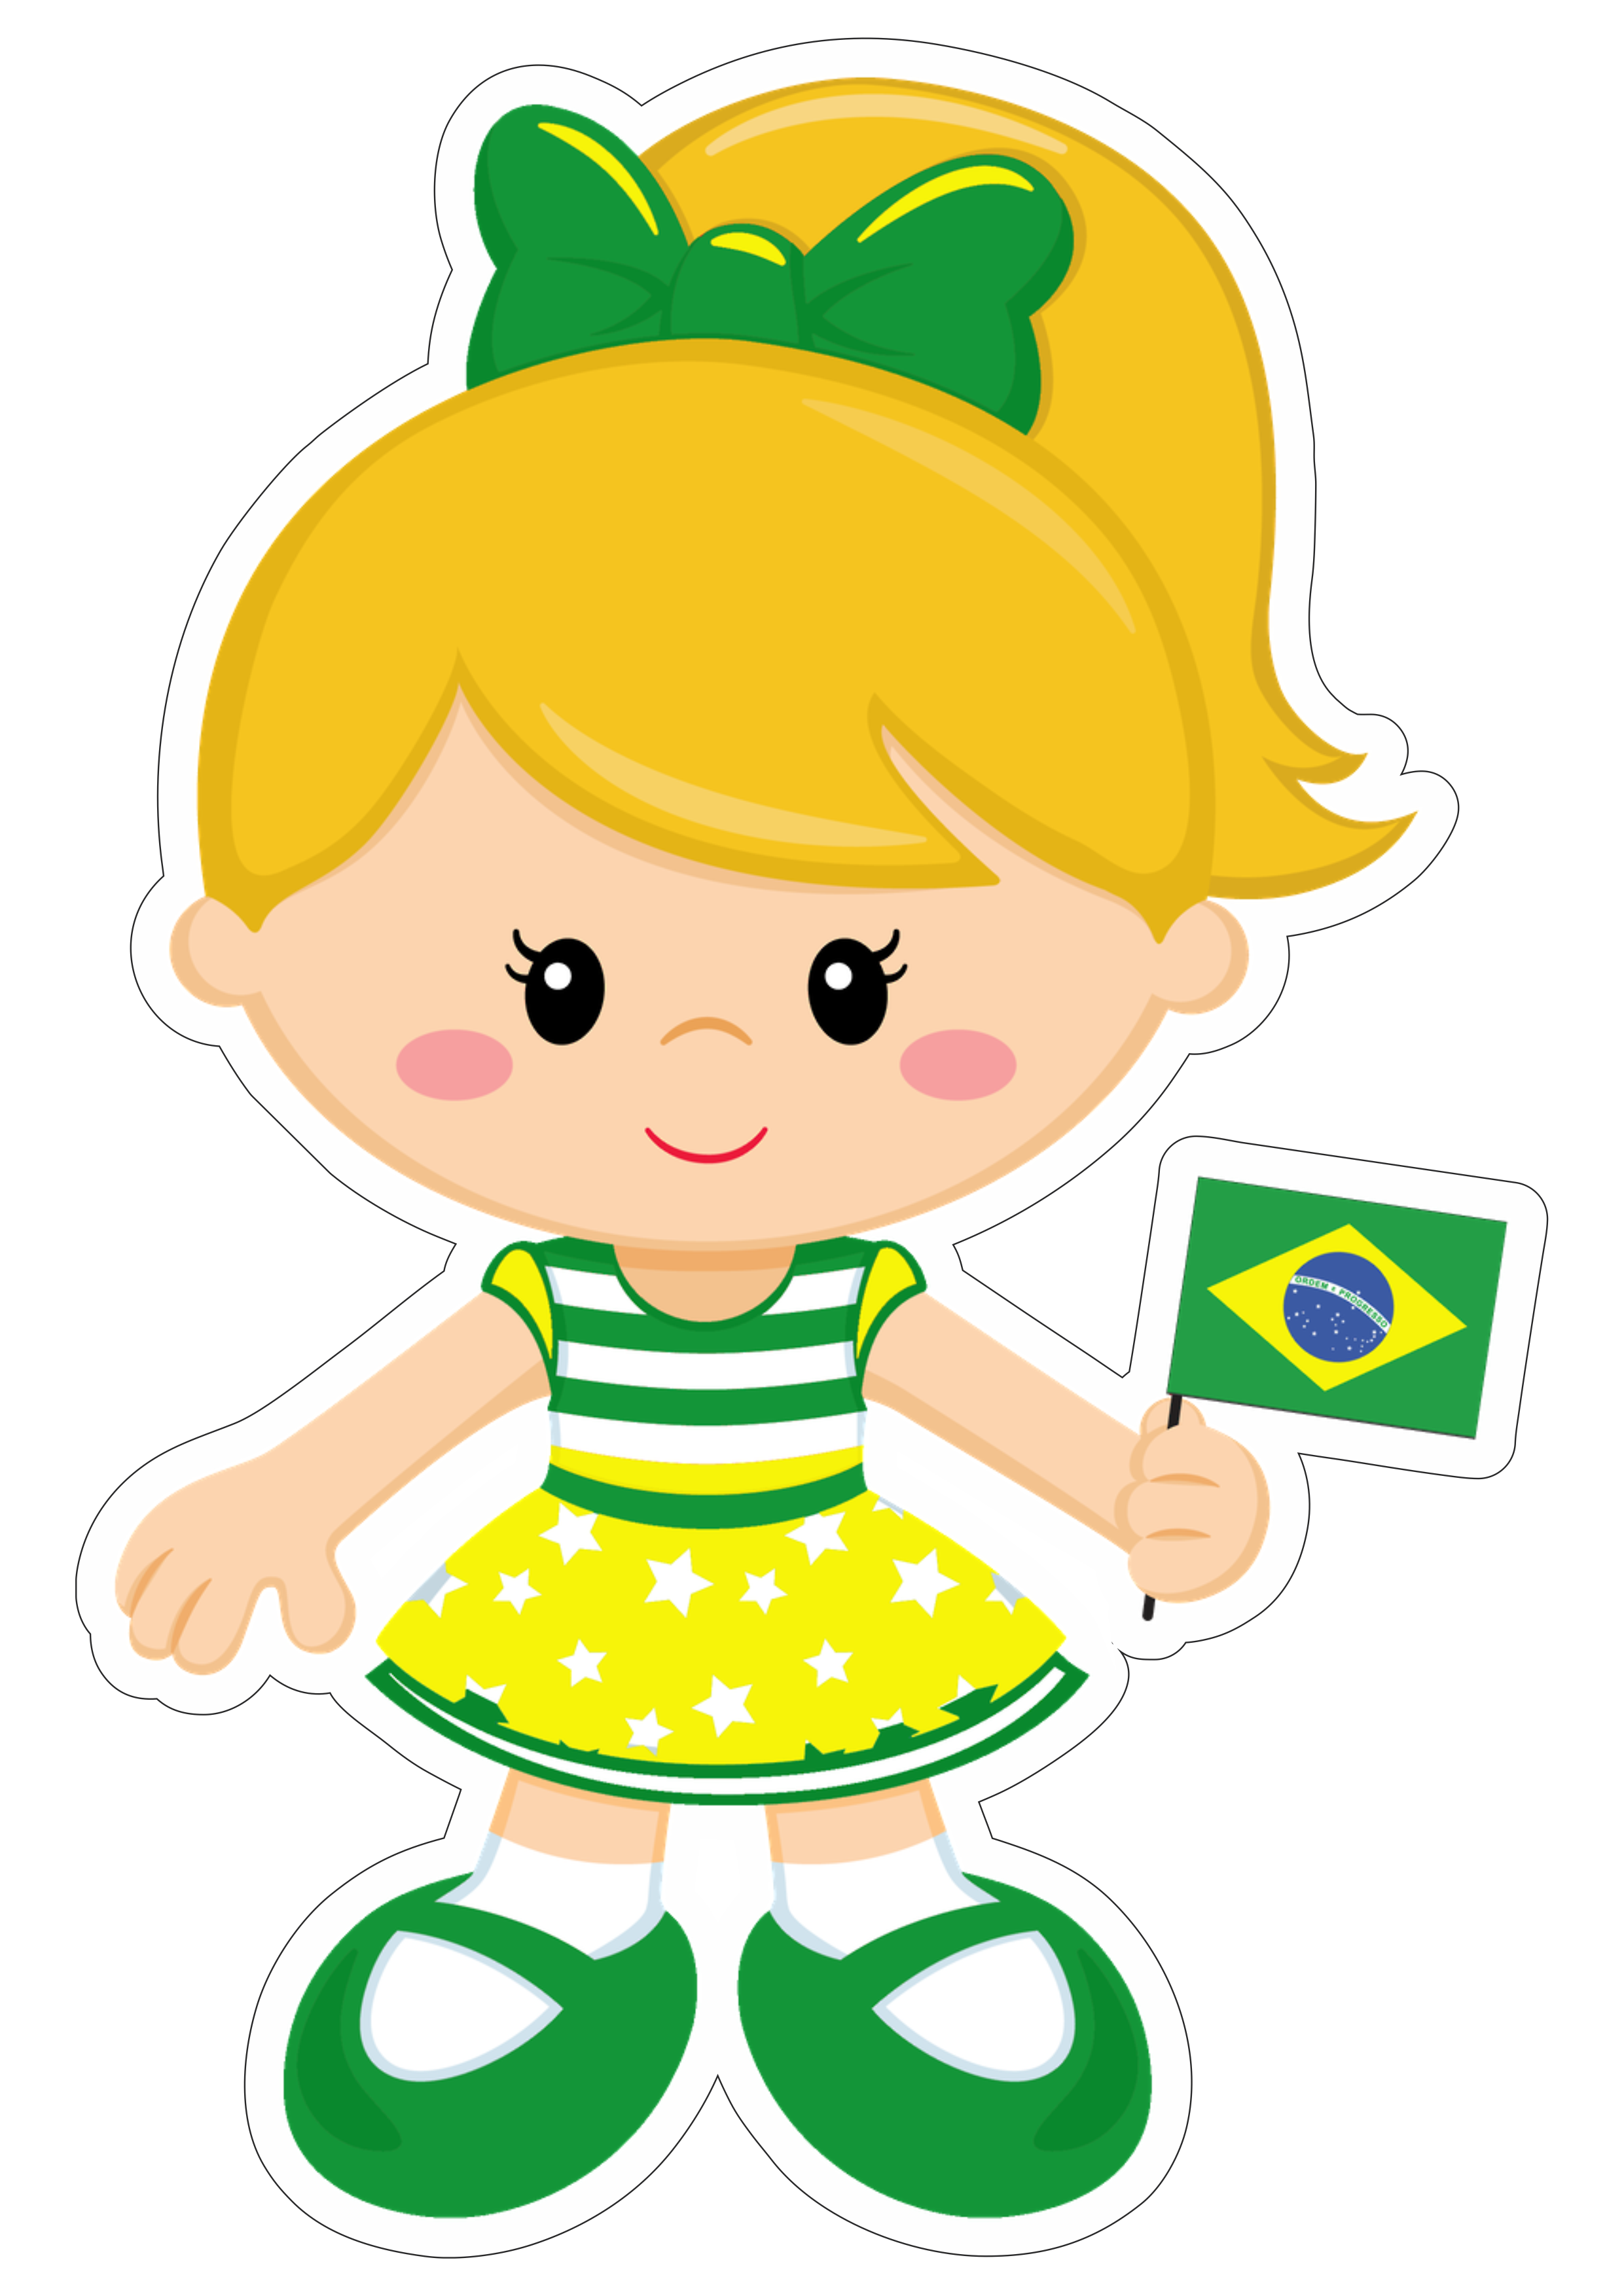 Copa do mundo 2022 torcedora infantil fundo transparente download png